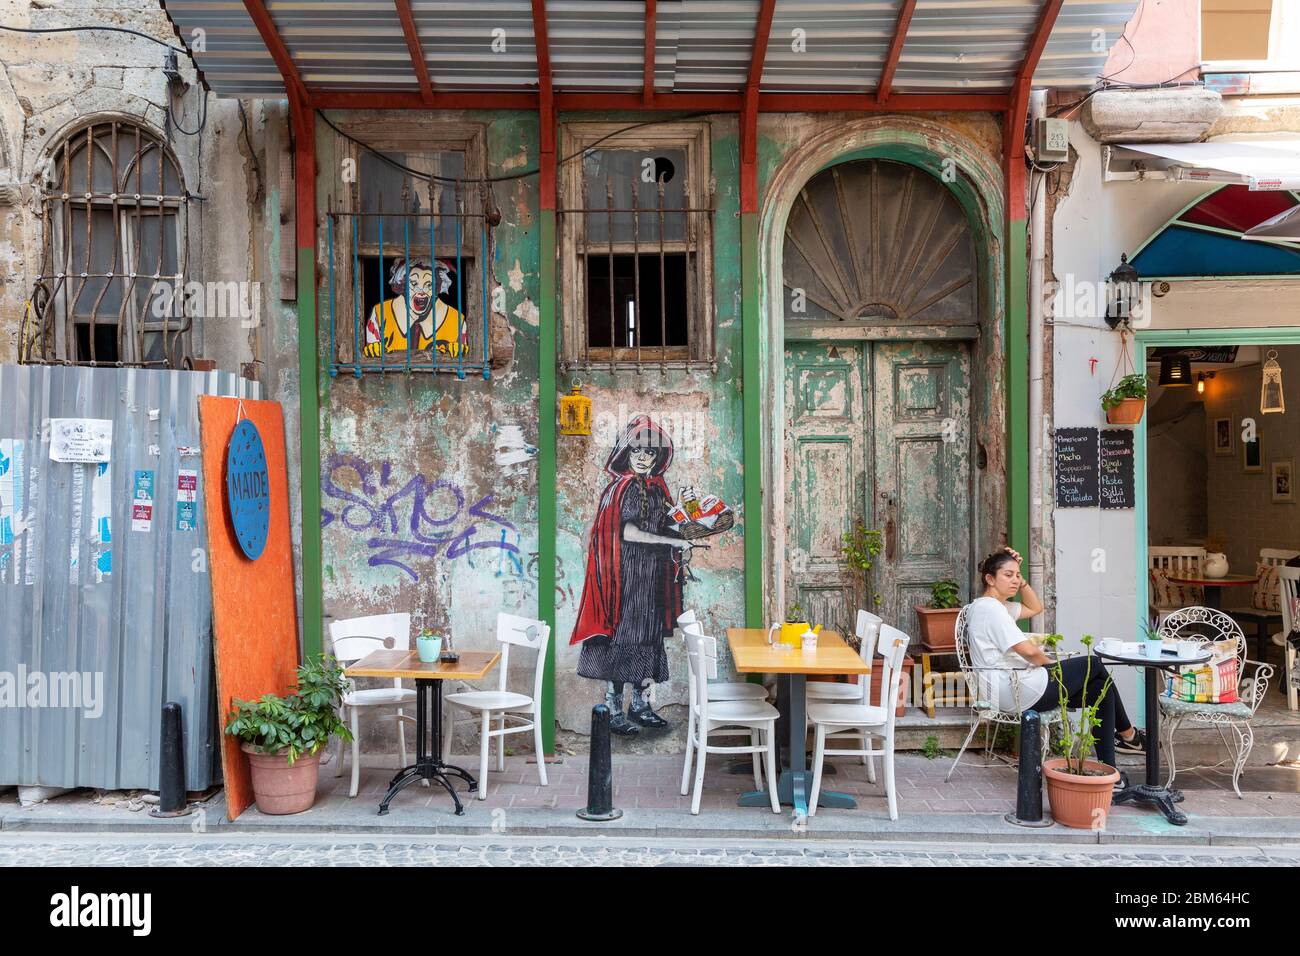 Im schönen Stadtviertel Fener teilen sich Straßencafés und europäisch-türkische Bistros die Straße mit alten Holzhäusern, Istanbul Stock Photo